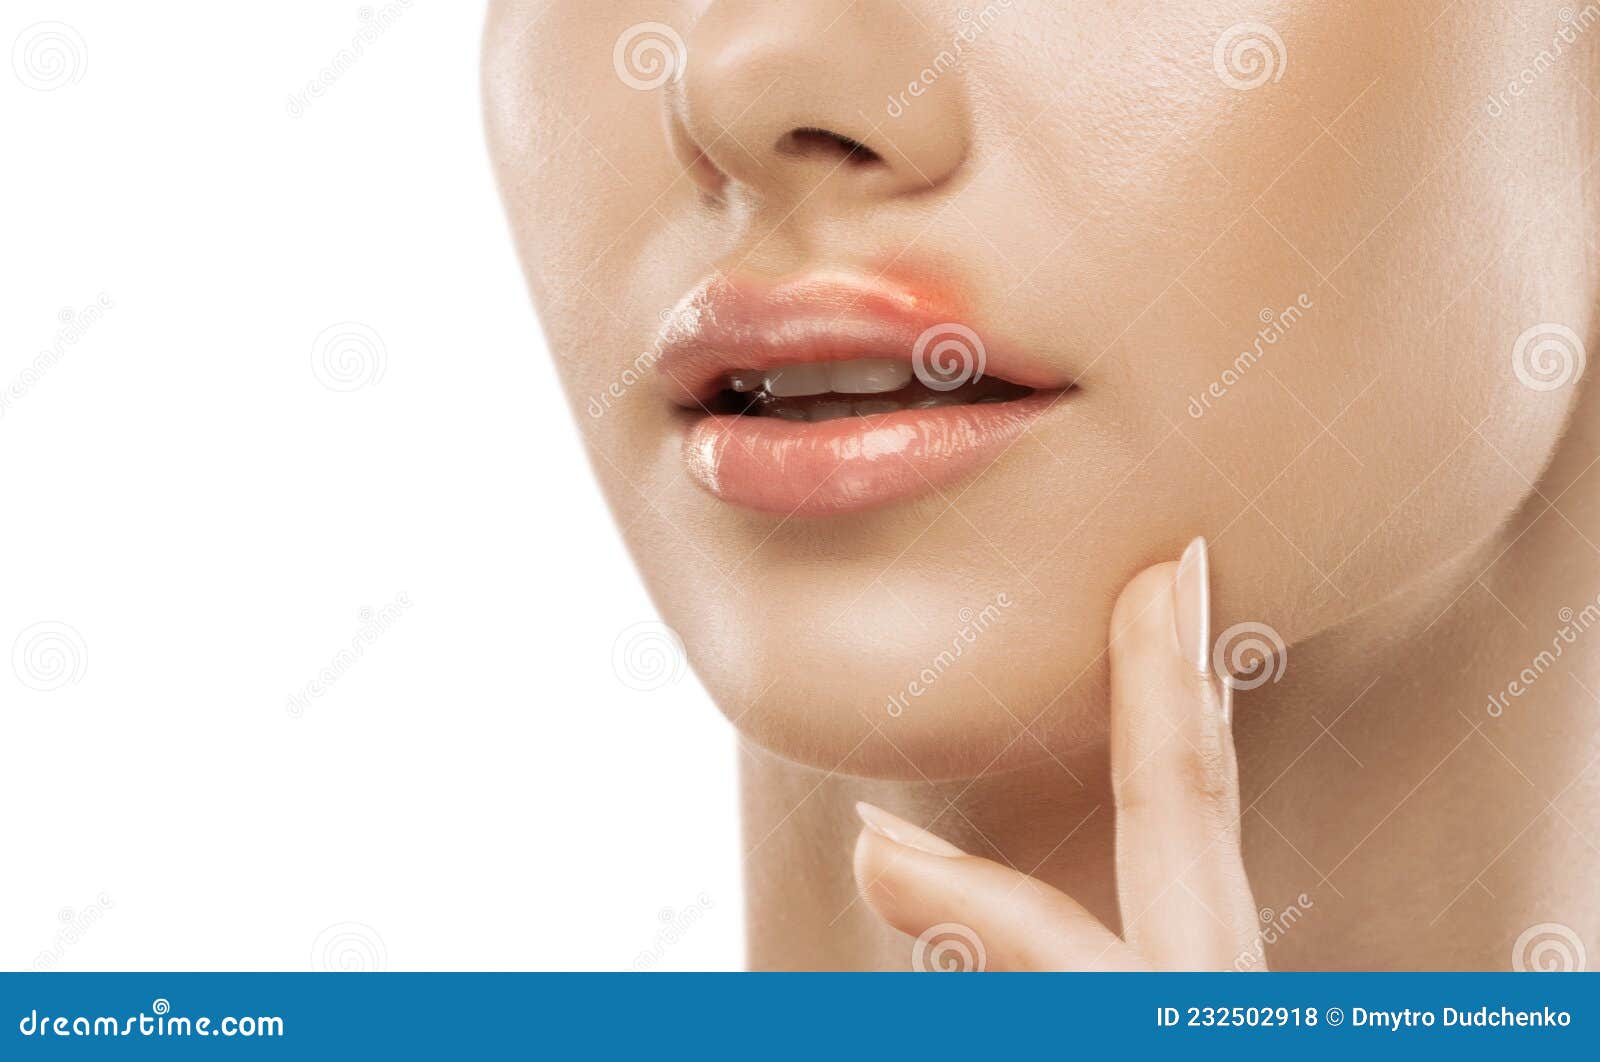 嘴唇上长痘（有图）是什么身体原因引起的？_百度知道